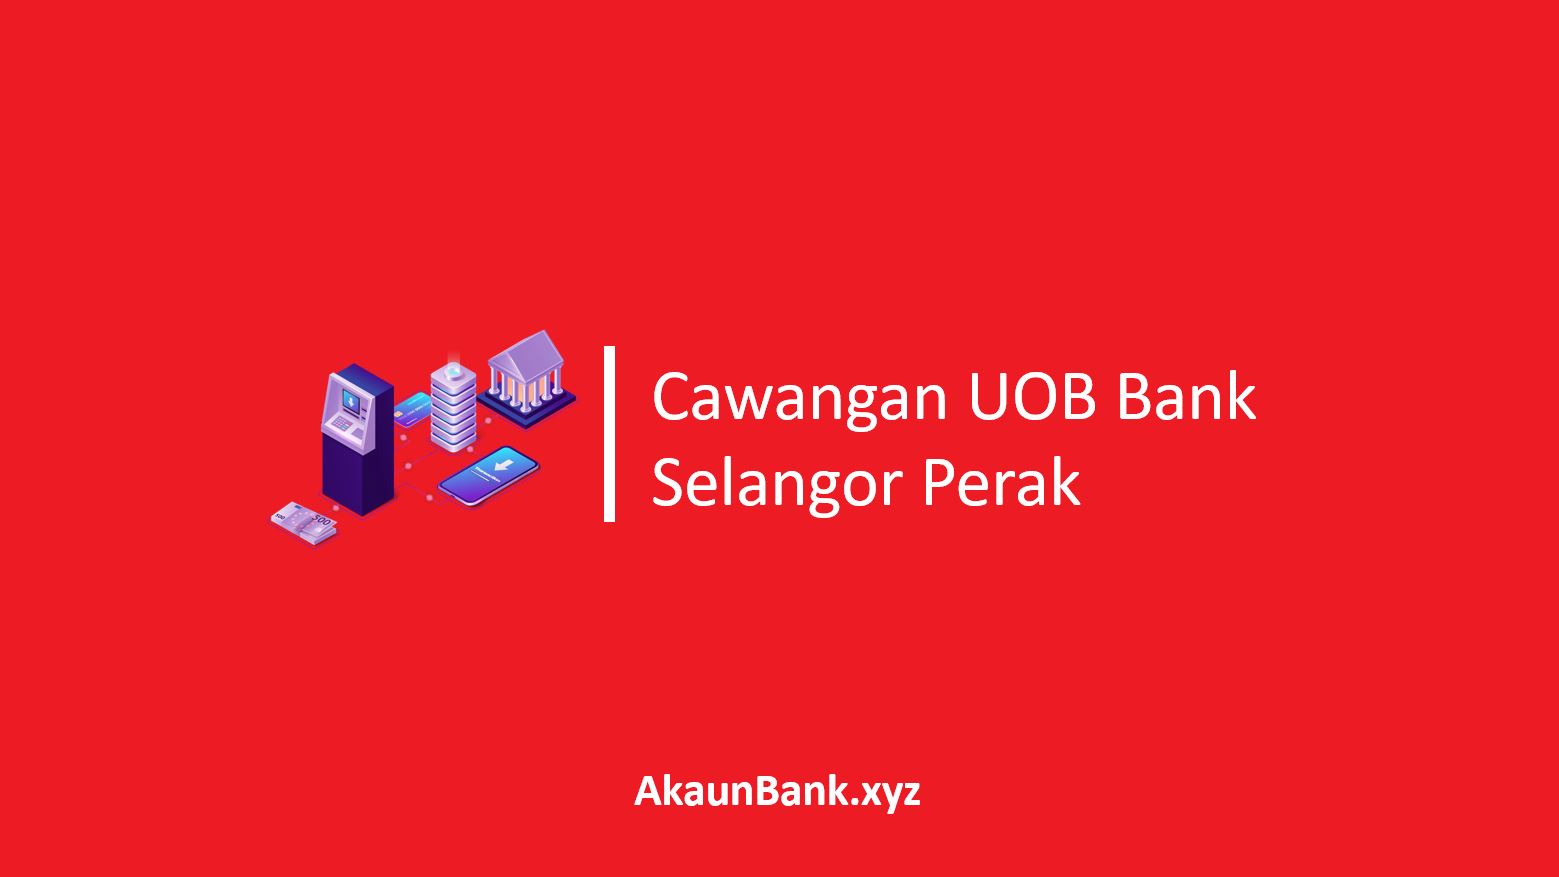 Cawangan UOB Bank Selangor Perak